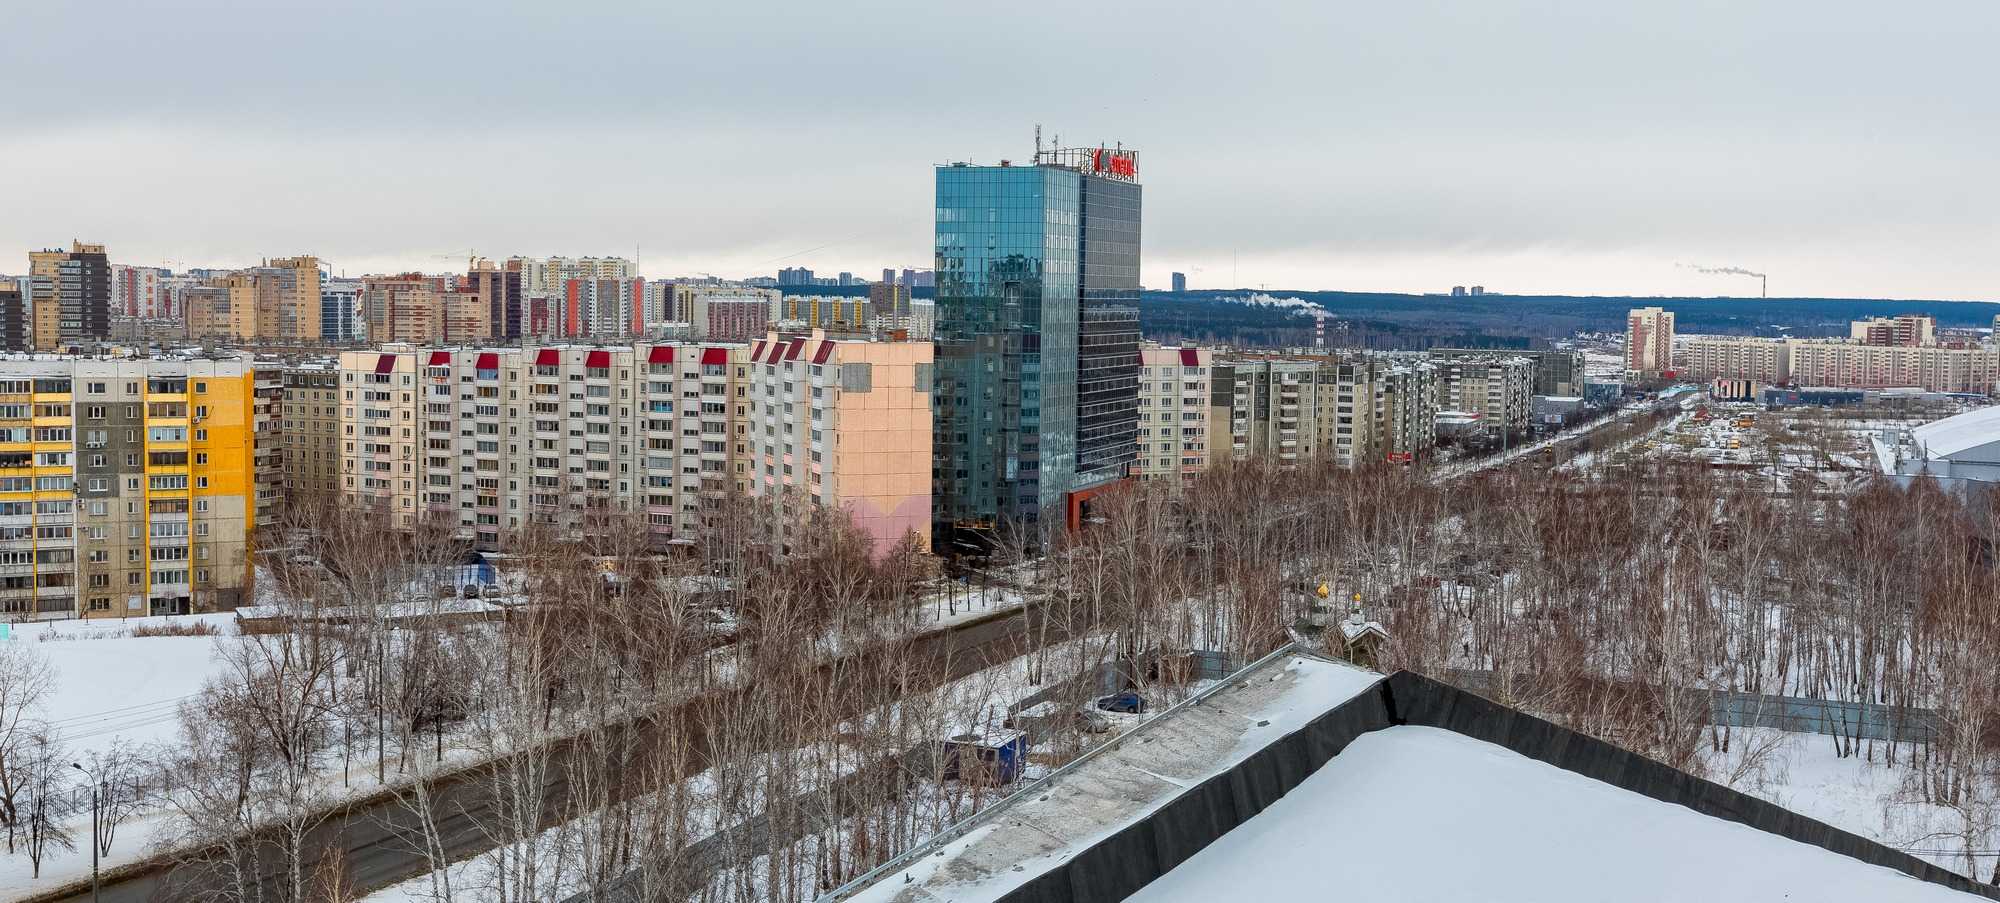 Сколько денег потратят в Челябинске на обманутых дольщиков